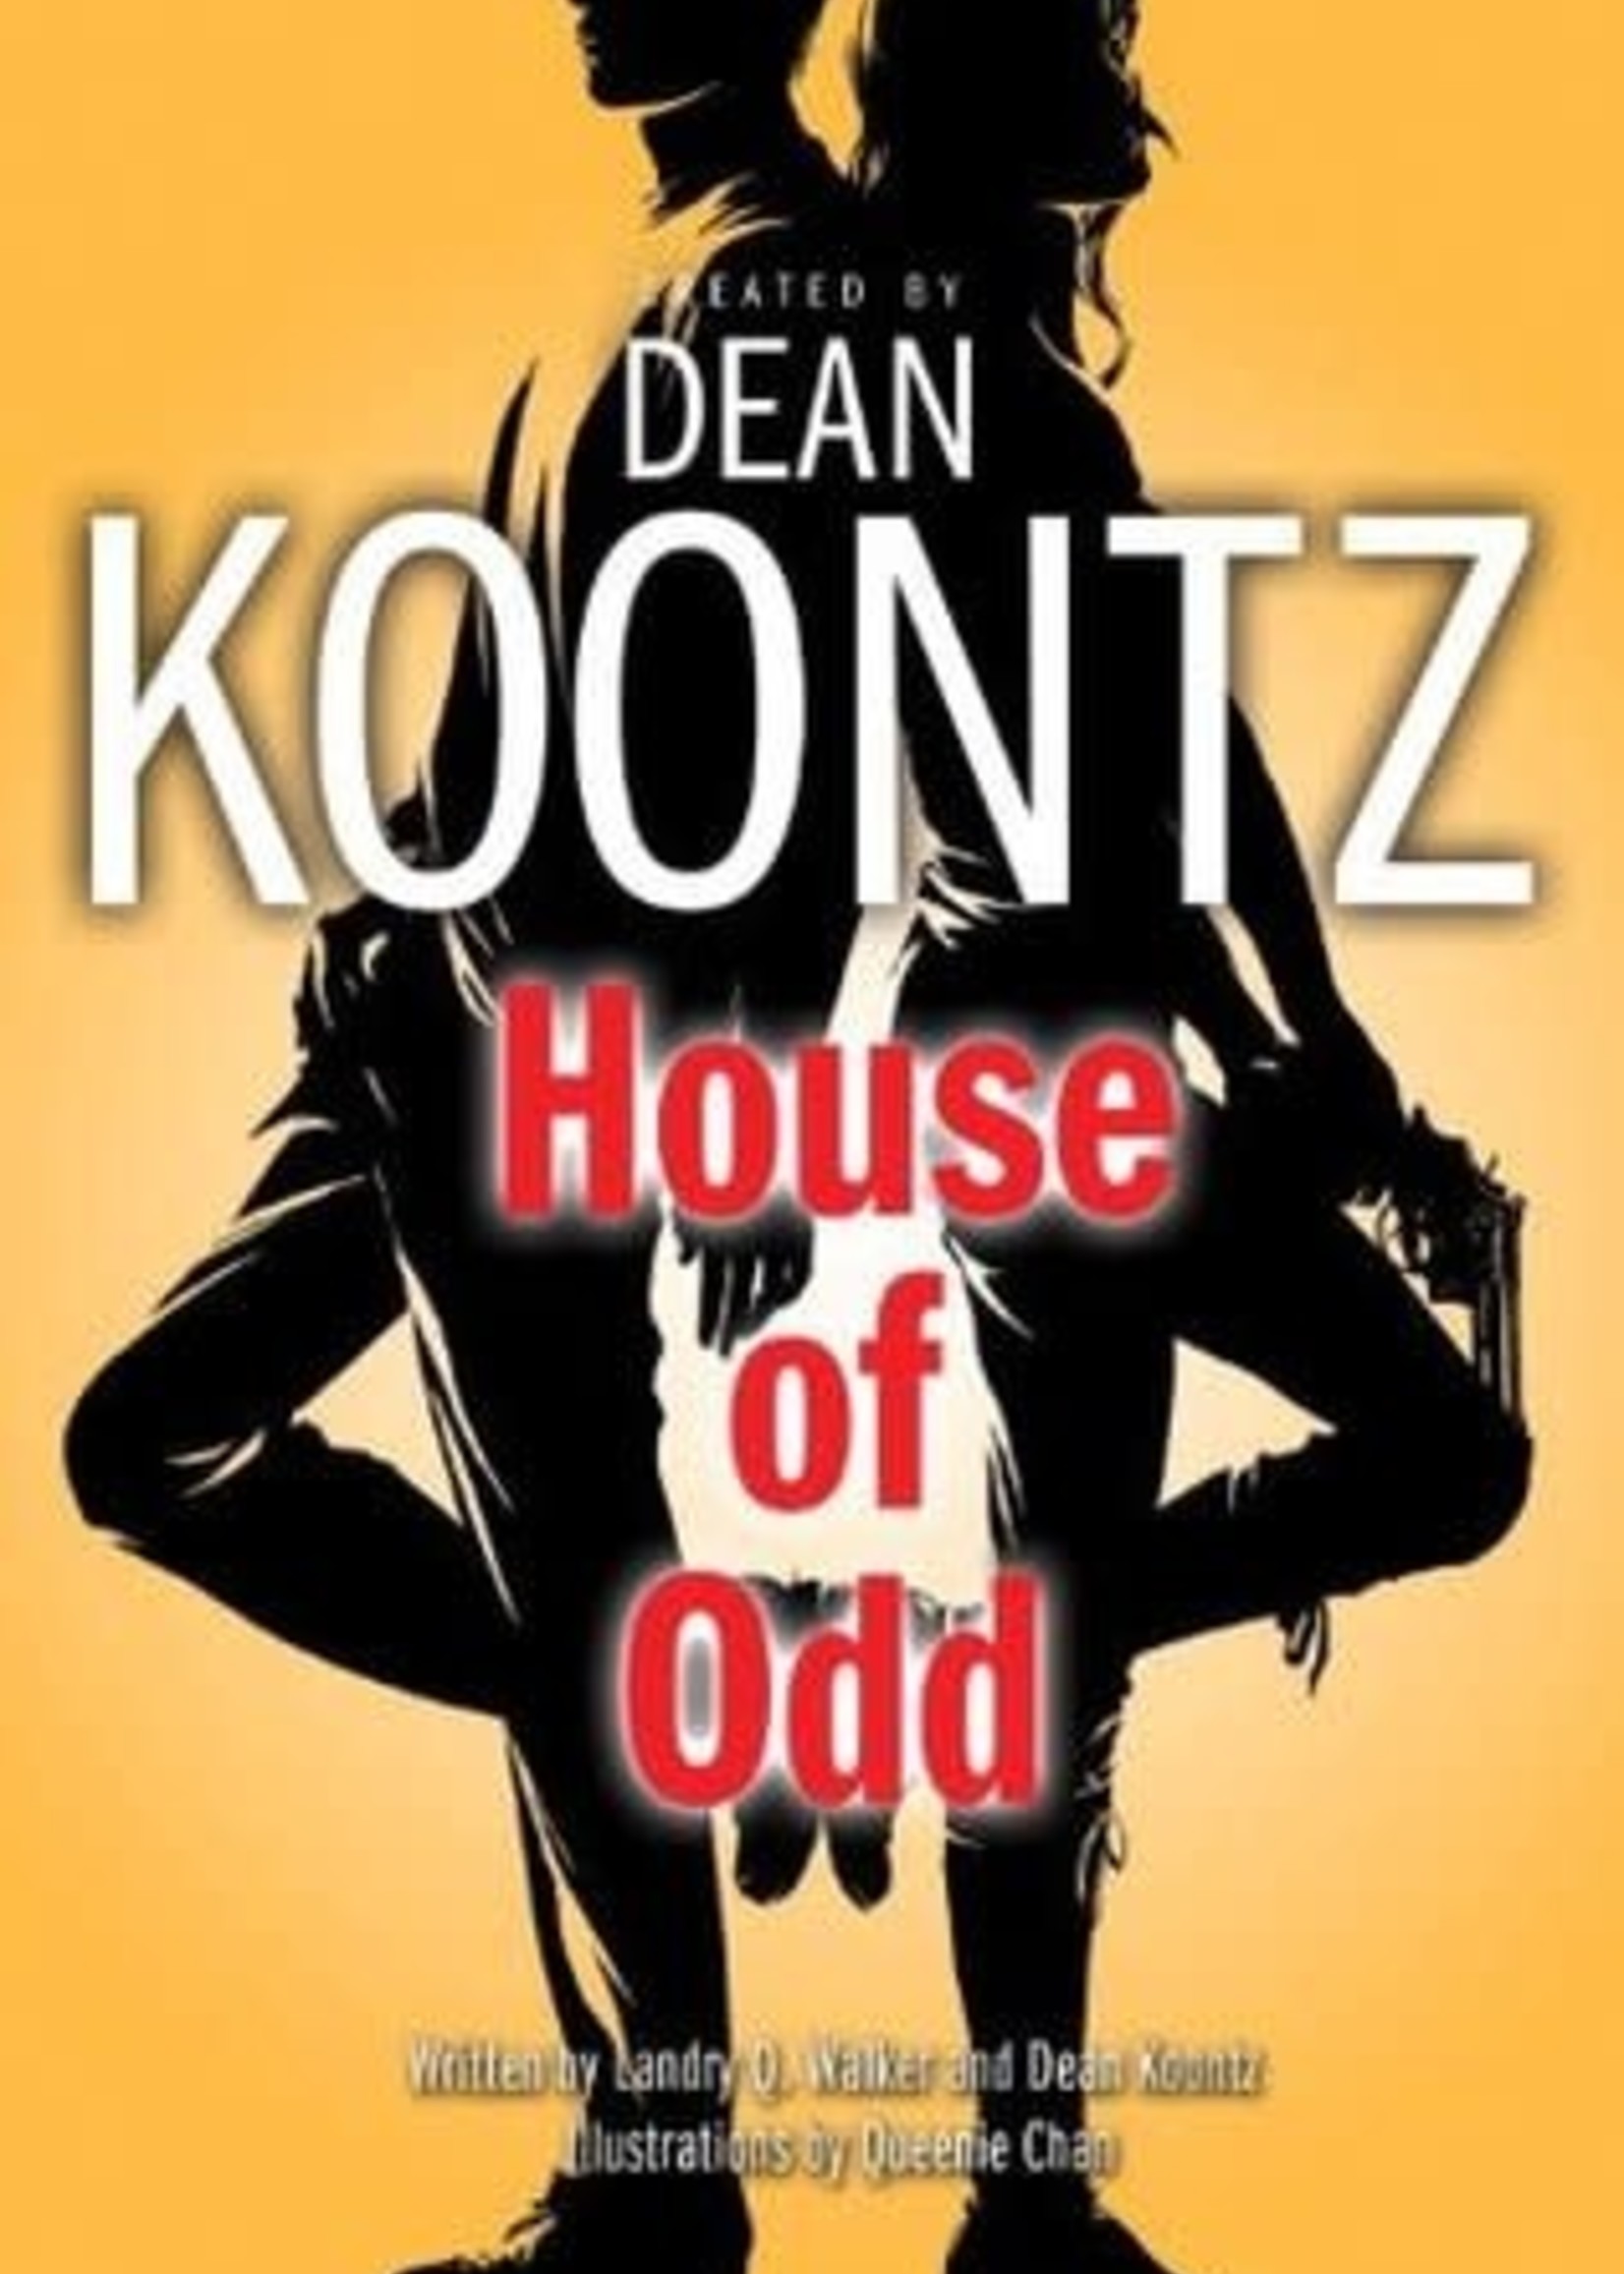 House of Odd by Dean Koontz,  Landry Q. Walker,  Queenie Chan